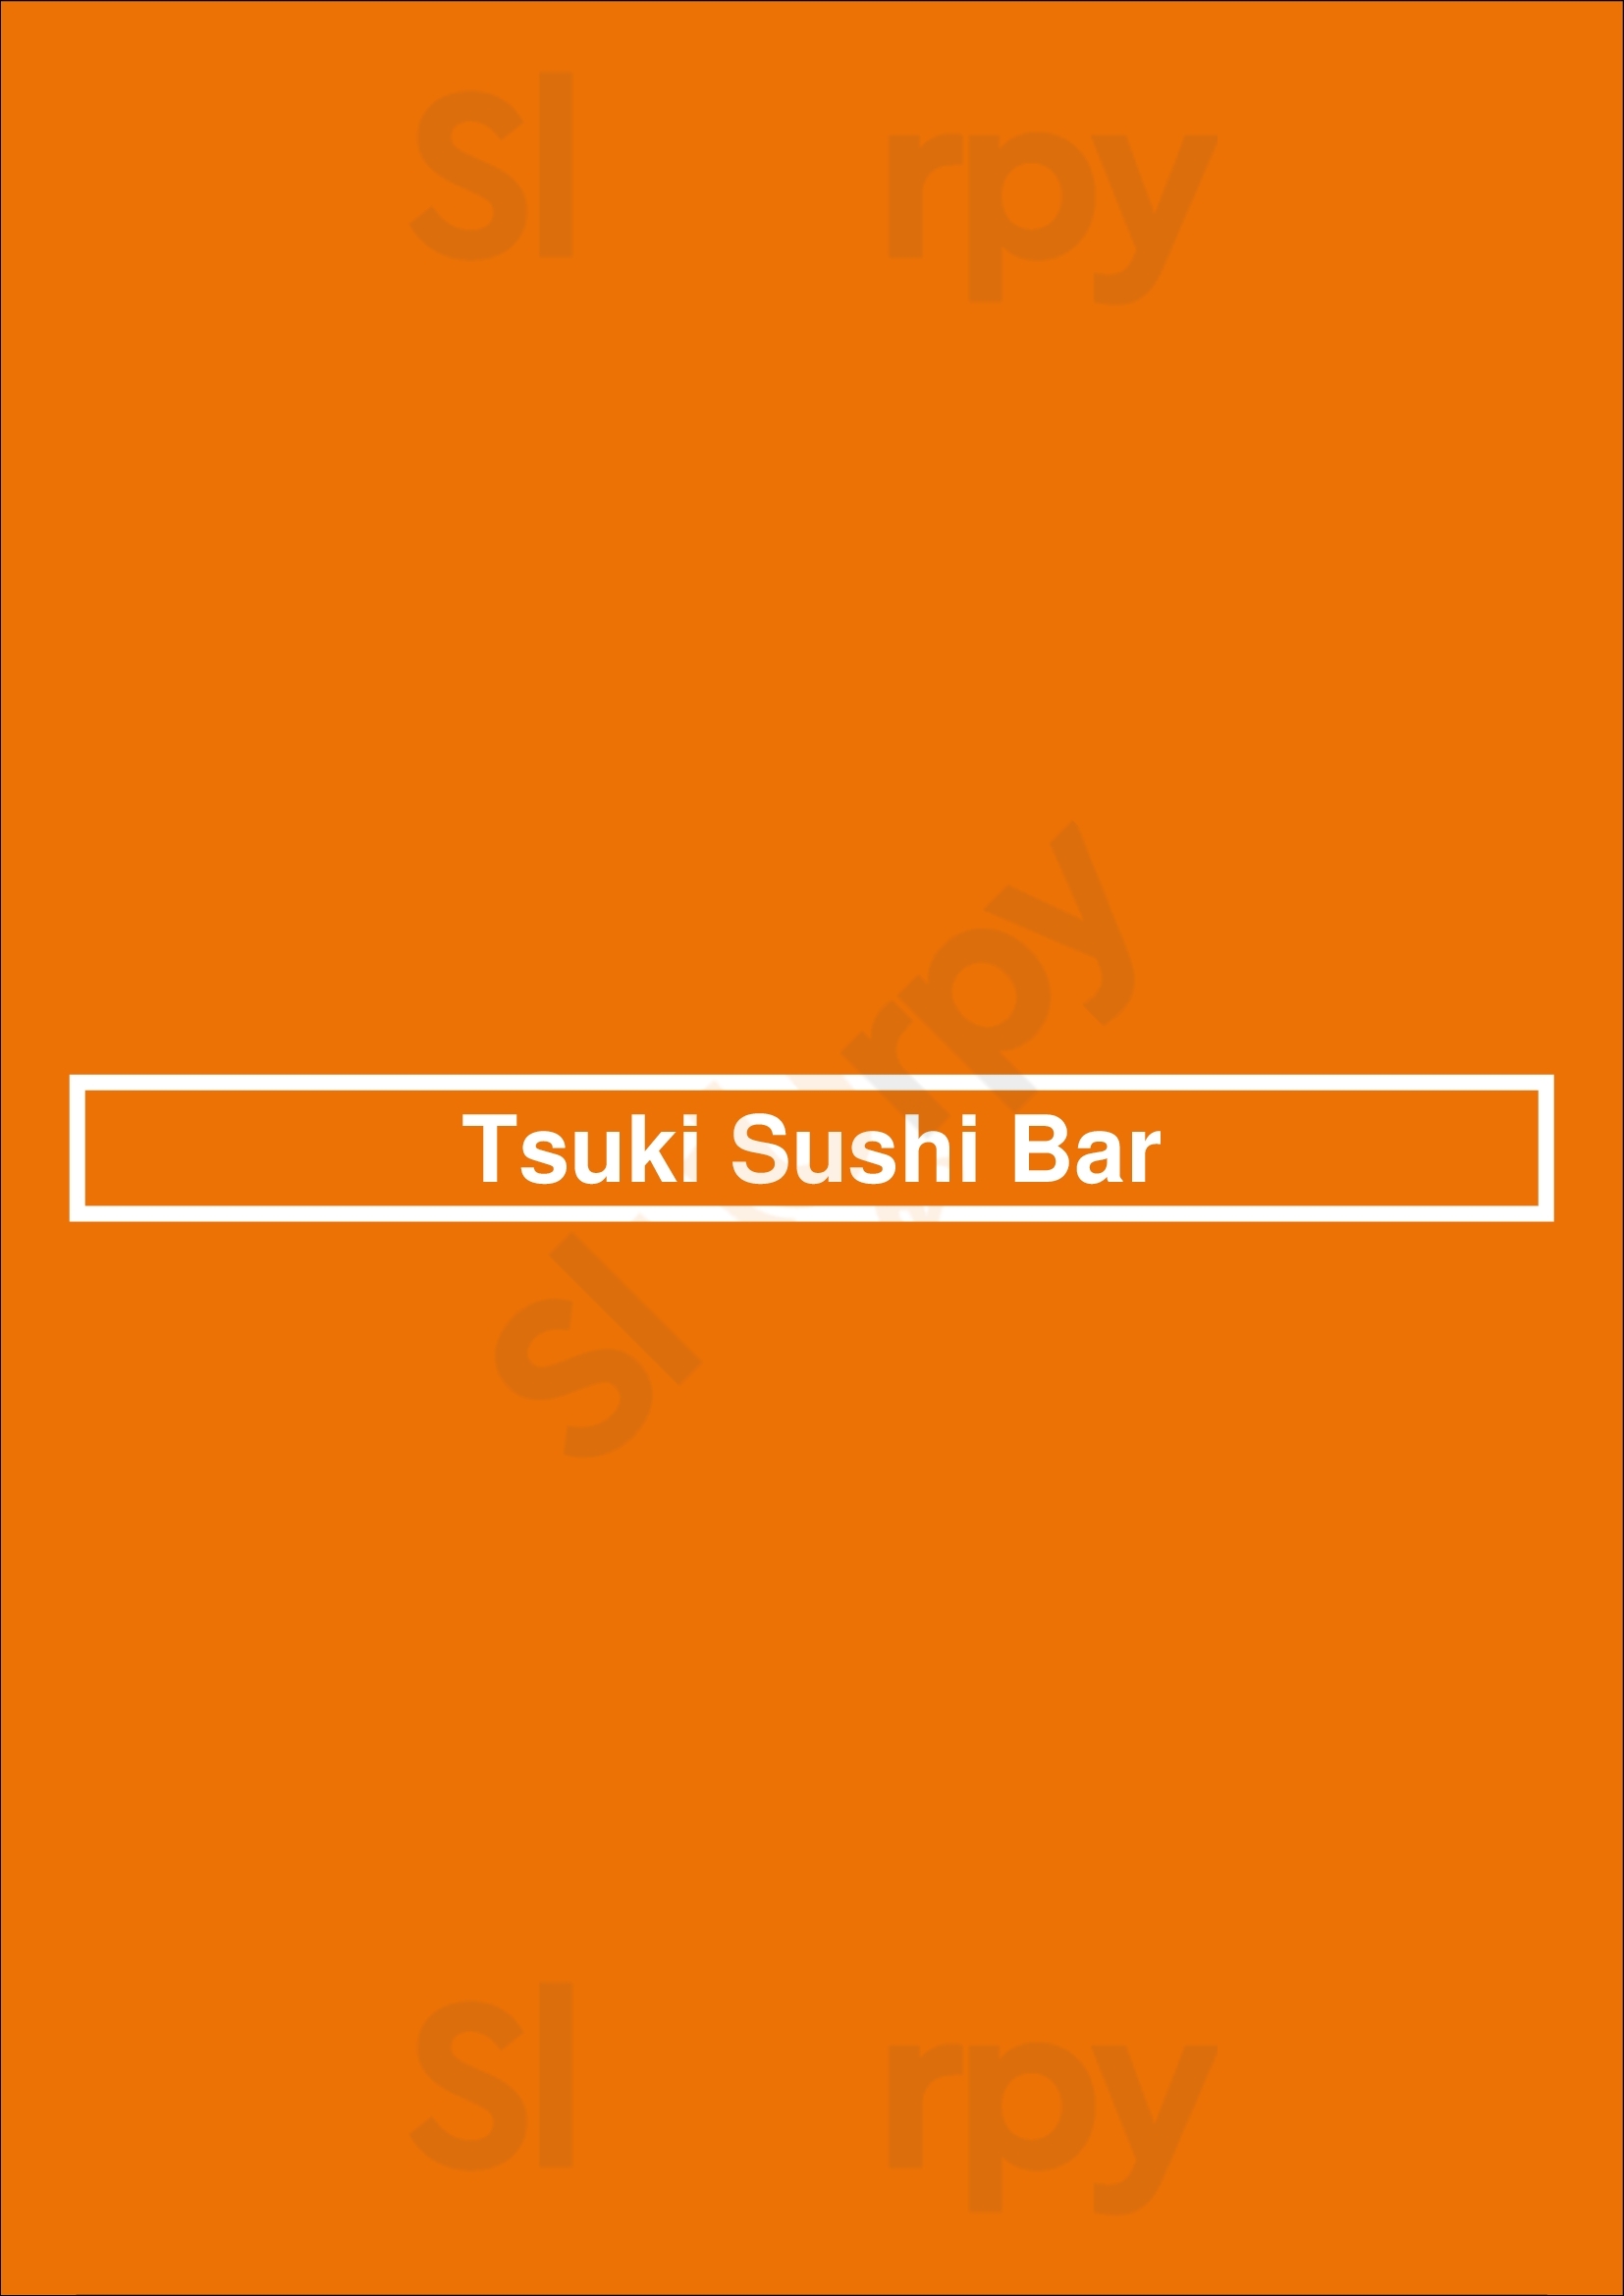 Tsuki Sushi Bar Vancouver Menu - 1